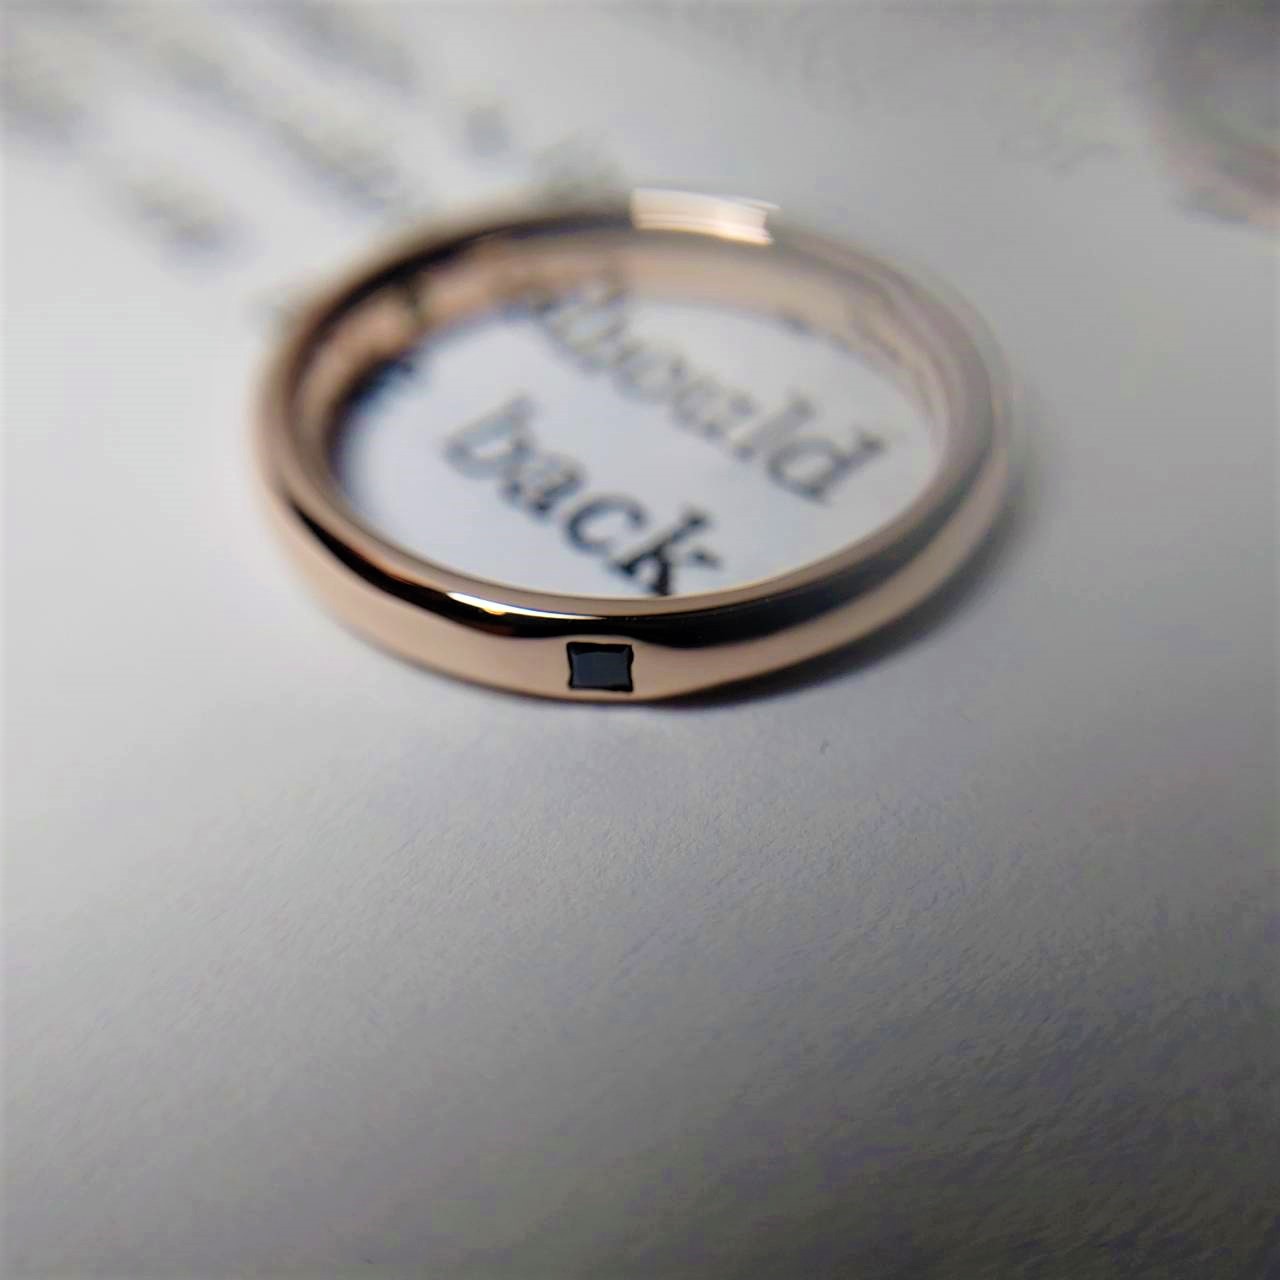 男性用結婚指輪にブラックのプリンセスカットをセッティング